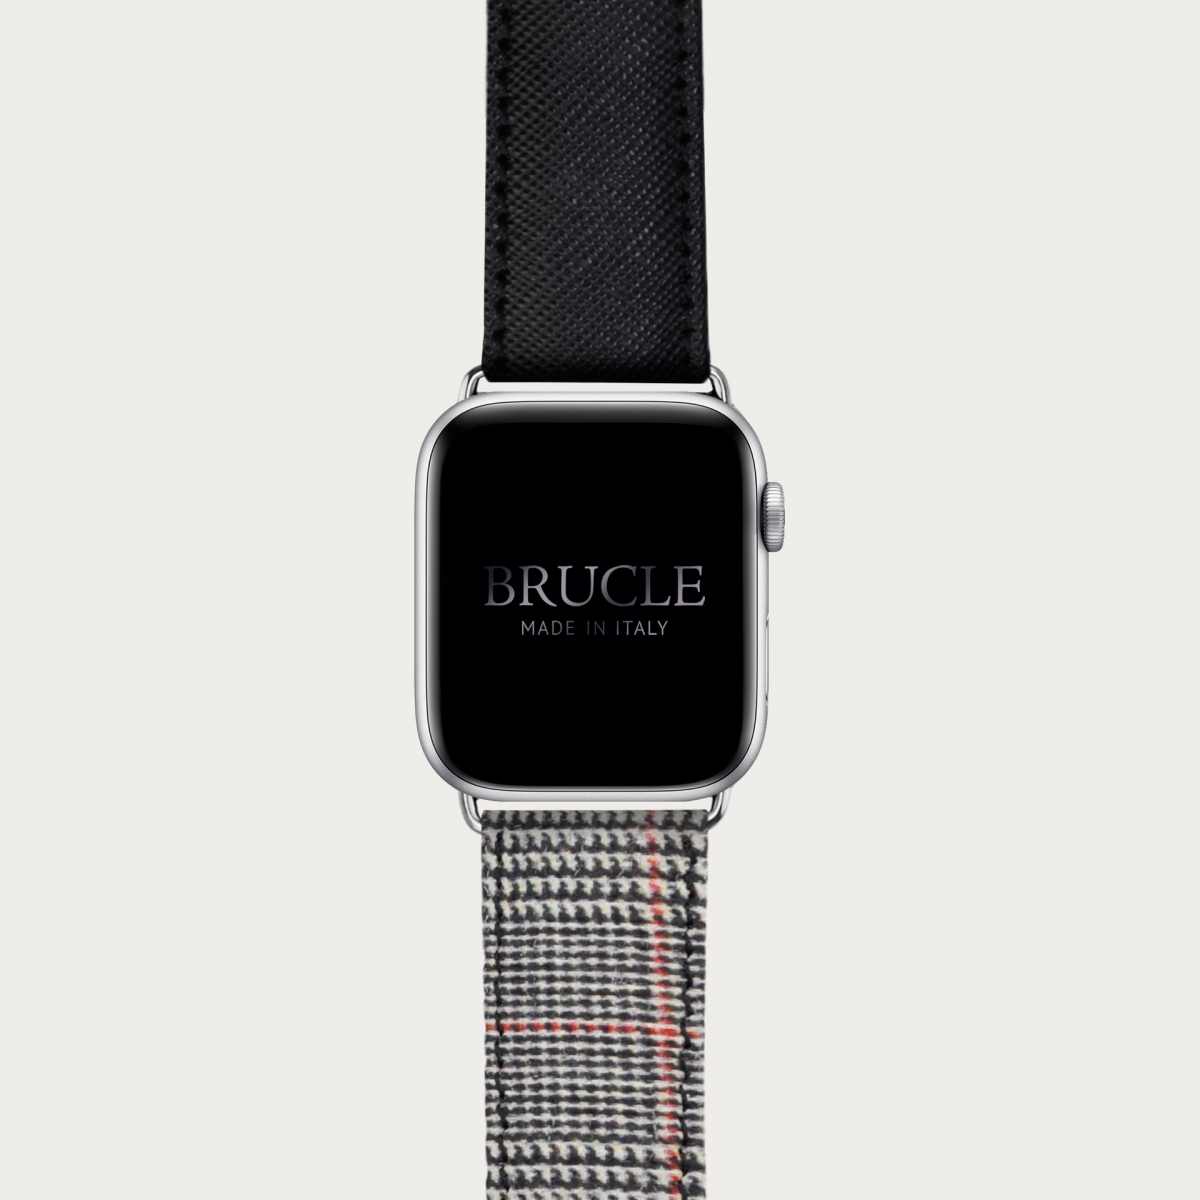 Cinturino bicolor in pelle stampata per orologio, Apple Watch e Samsung Galaxy Watch, saffiano nero e tartan